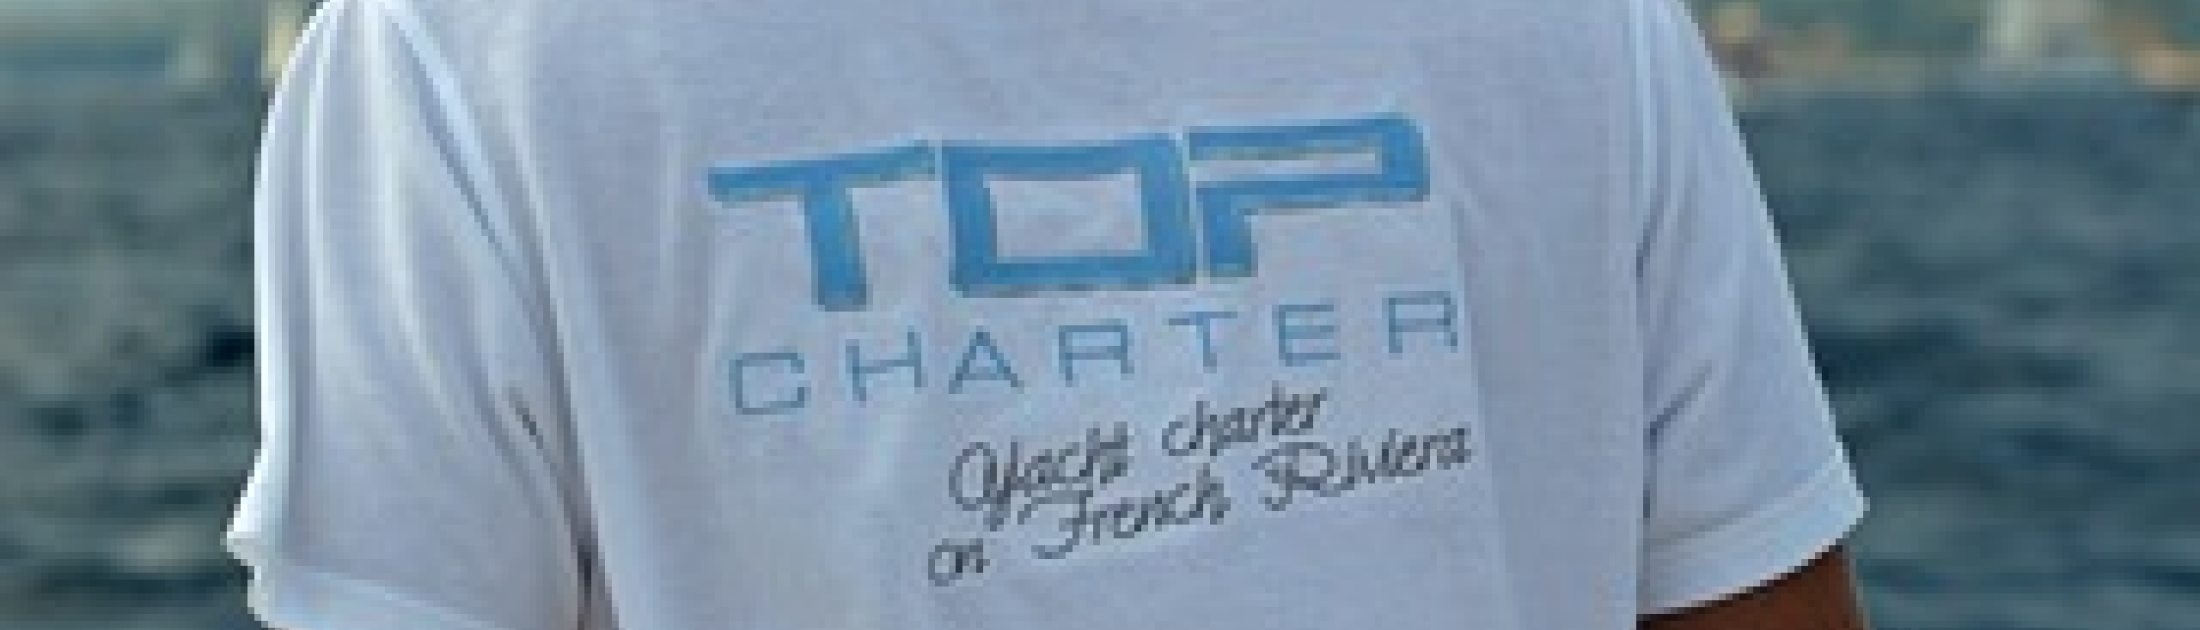 L'équipe Top Charter